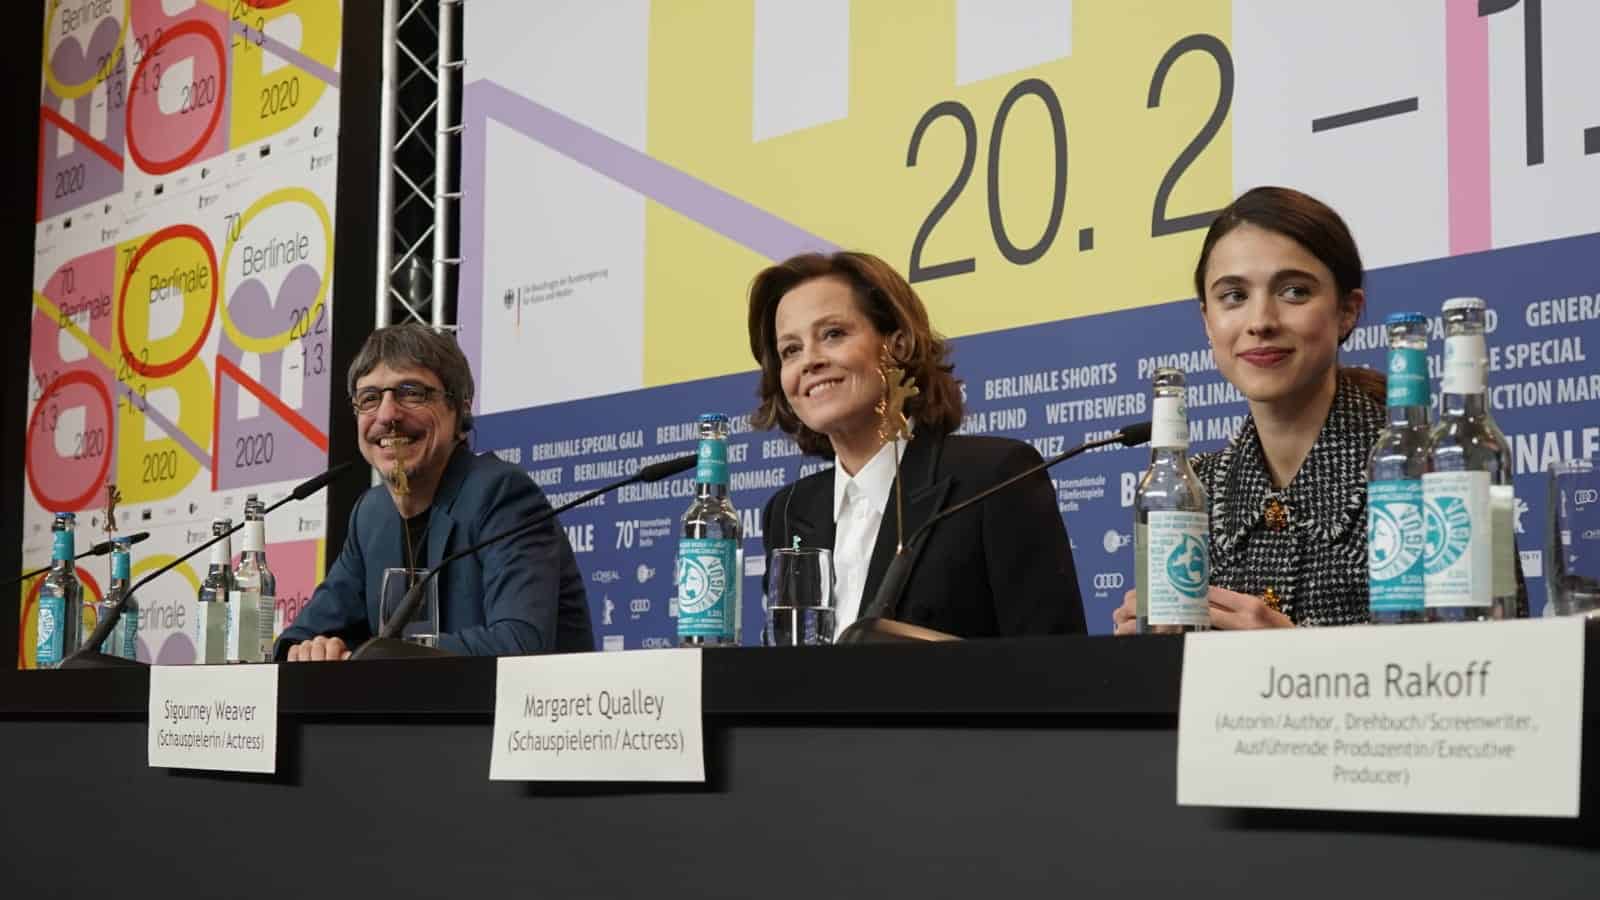 Sigourney Weaver und Margaret Qualley bei der Pressekonferenz in Berlin.